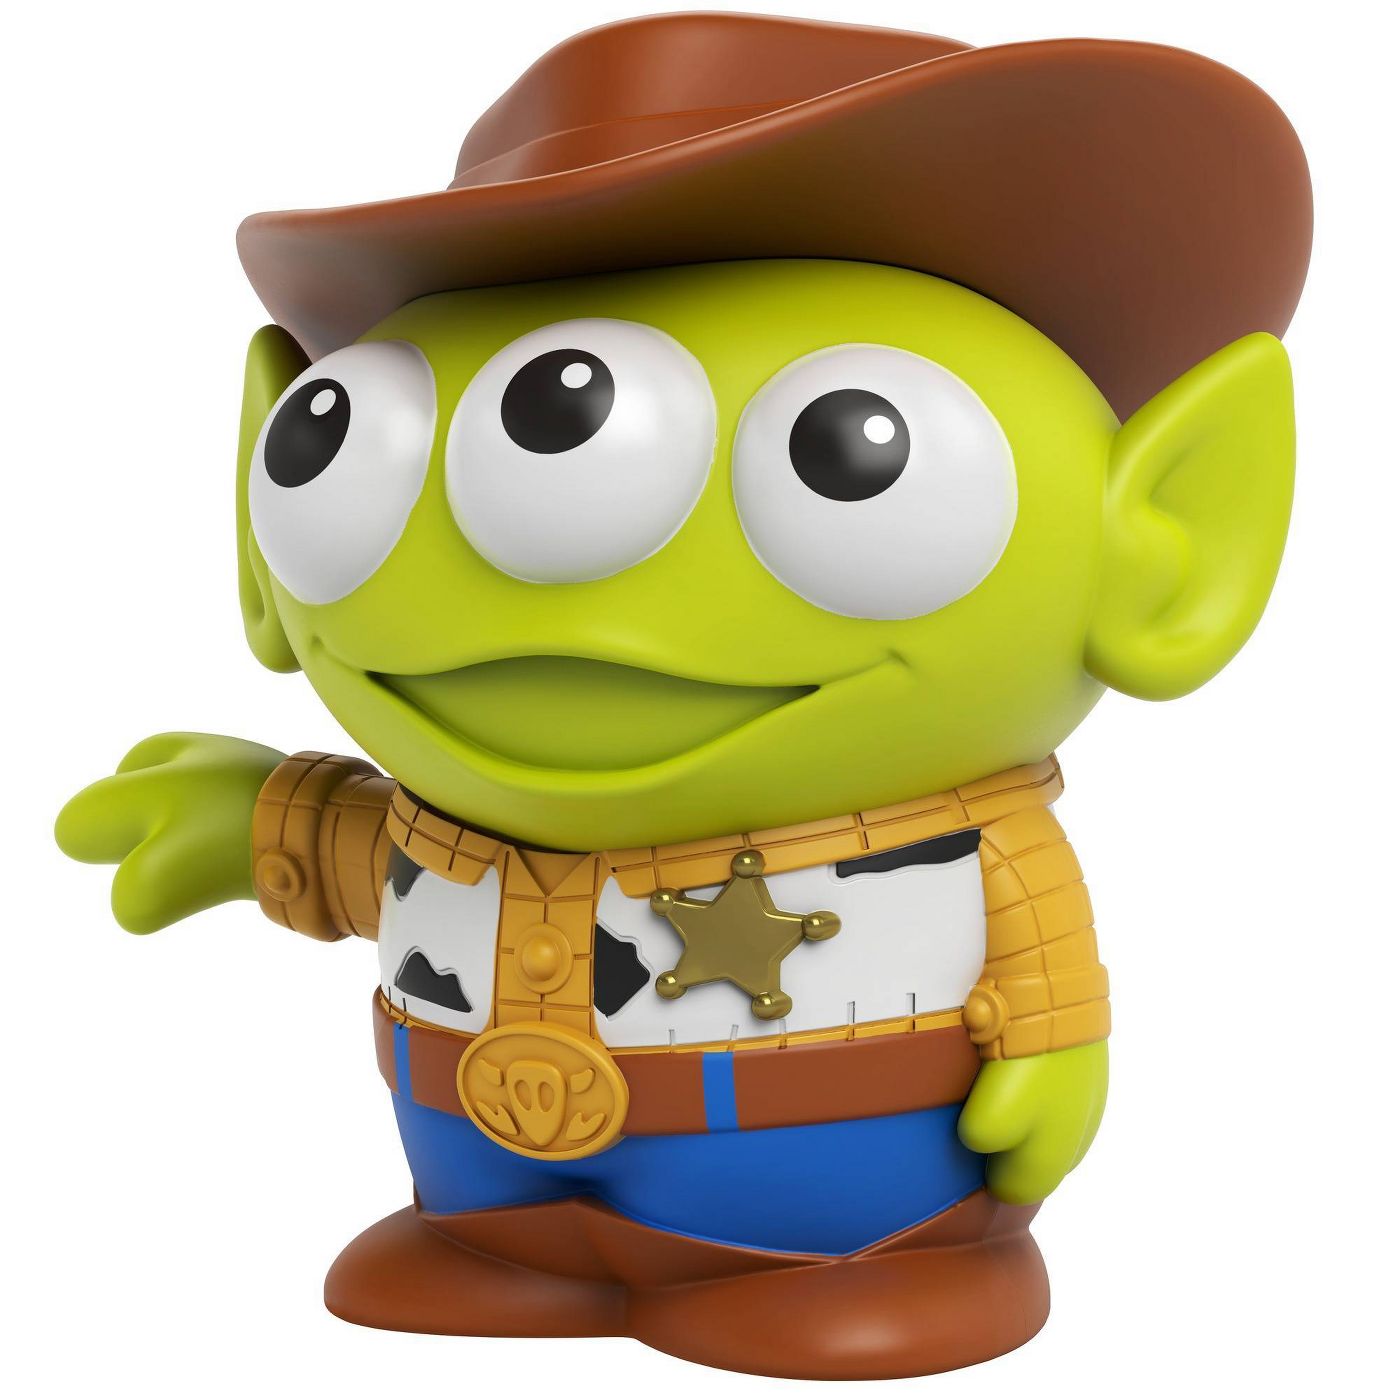 Disney Pixar Alien Remix Woody Figure New with Box